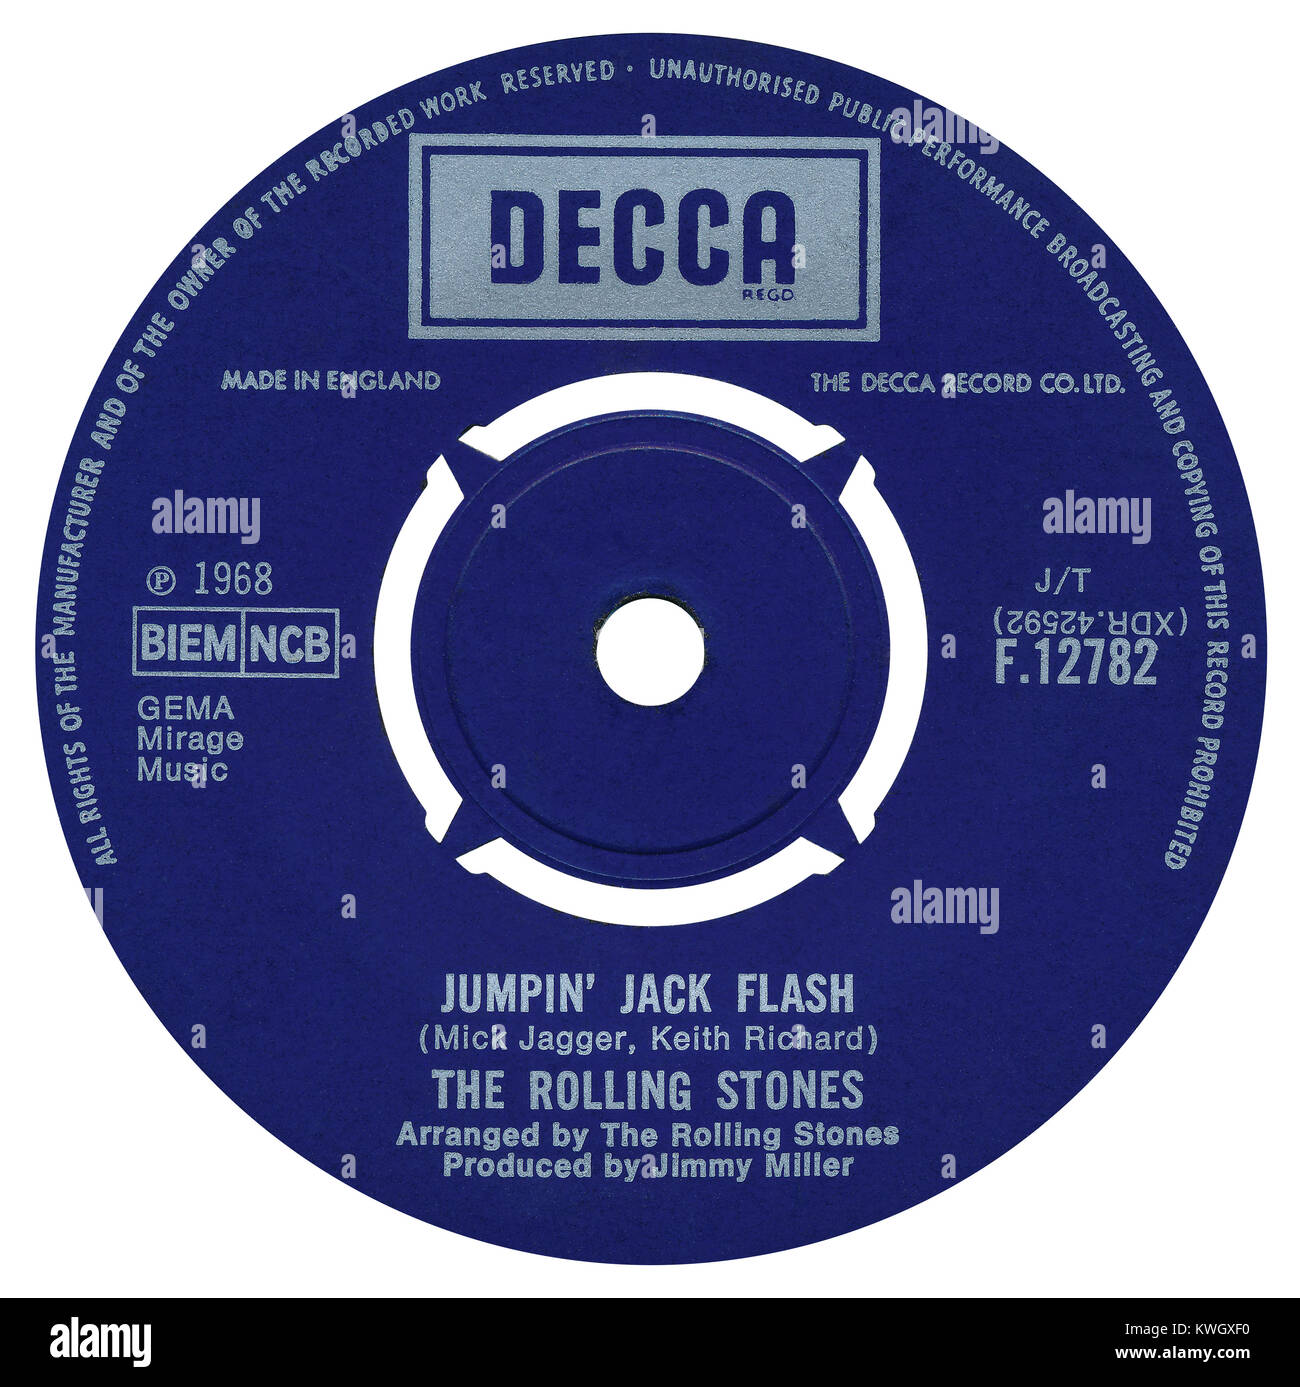 45 RPM 7' UK record etichetta di " Jumping Jack Flash dai Rolling Stones. Scritto da Mick Jagger e Keith Richard, disposte dai Rolling Stones e prodotto da Jimmy Miller. Rilasciato nel maggio 1968 sul Decca record. Foto Stock